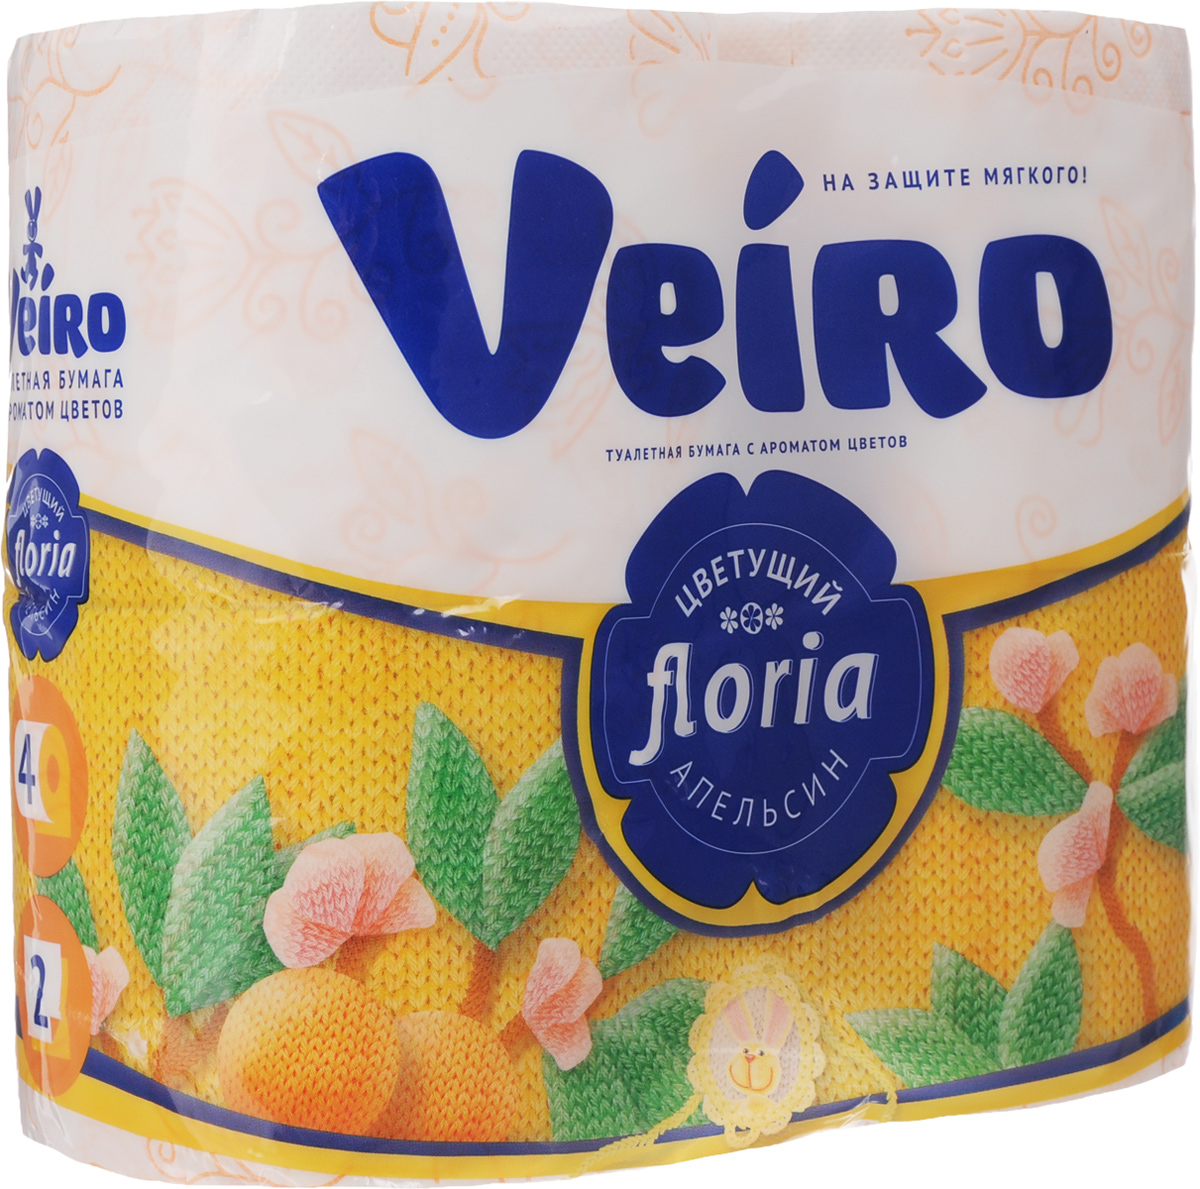 Бумага туалетная Veiro 